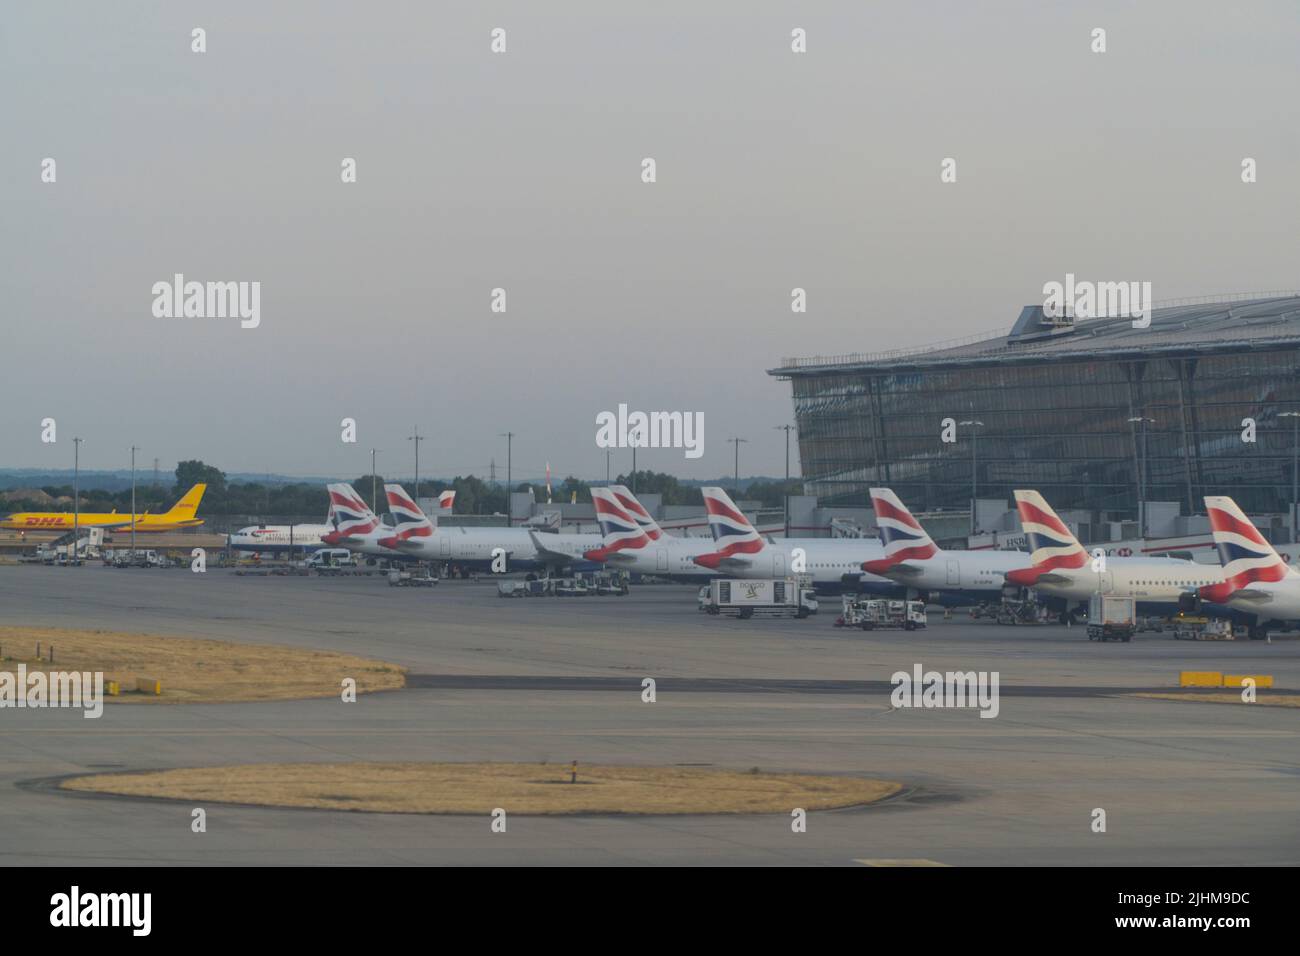 En la terminal 5 del aeropuerto de Heathrow, British Airways tiene aviones alineados en las puertas. Dado que las escuelas estatales están a punto de comenzar sus vacaciones de verano, los aeropuertos sufrirán presión, ya que las familias comienzan sus vacaciones y muchos vuelos ya han sido cancelados debido a la escasez de personal en tierra y en los manipuladores de equipajes de Heathrow y otros aeropuertos. Anna Watson/Alamy Foto de stock